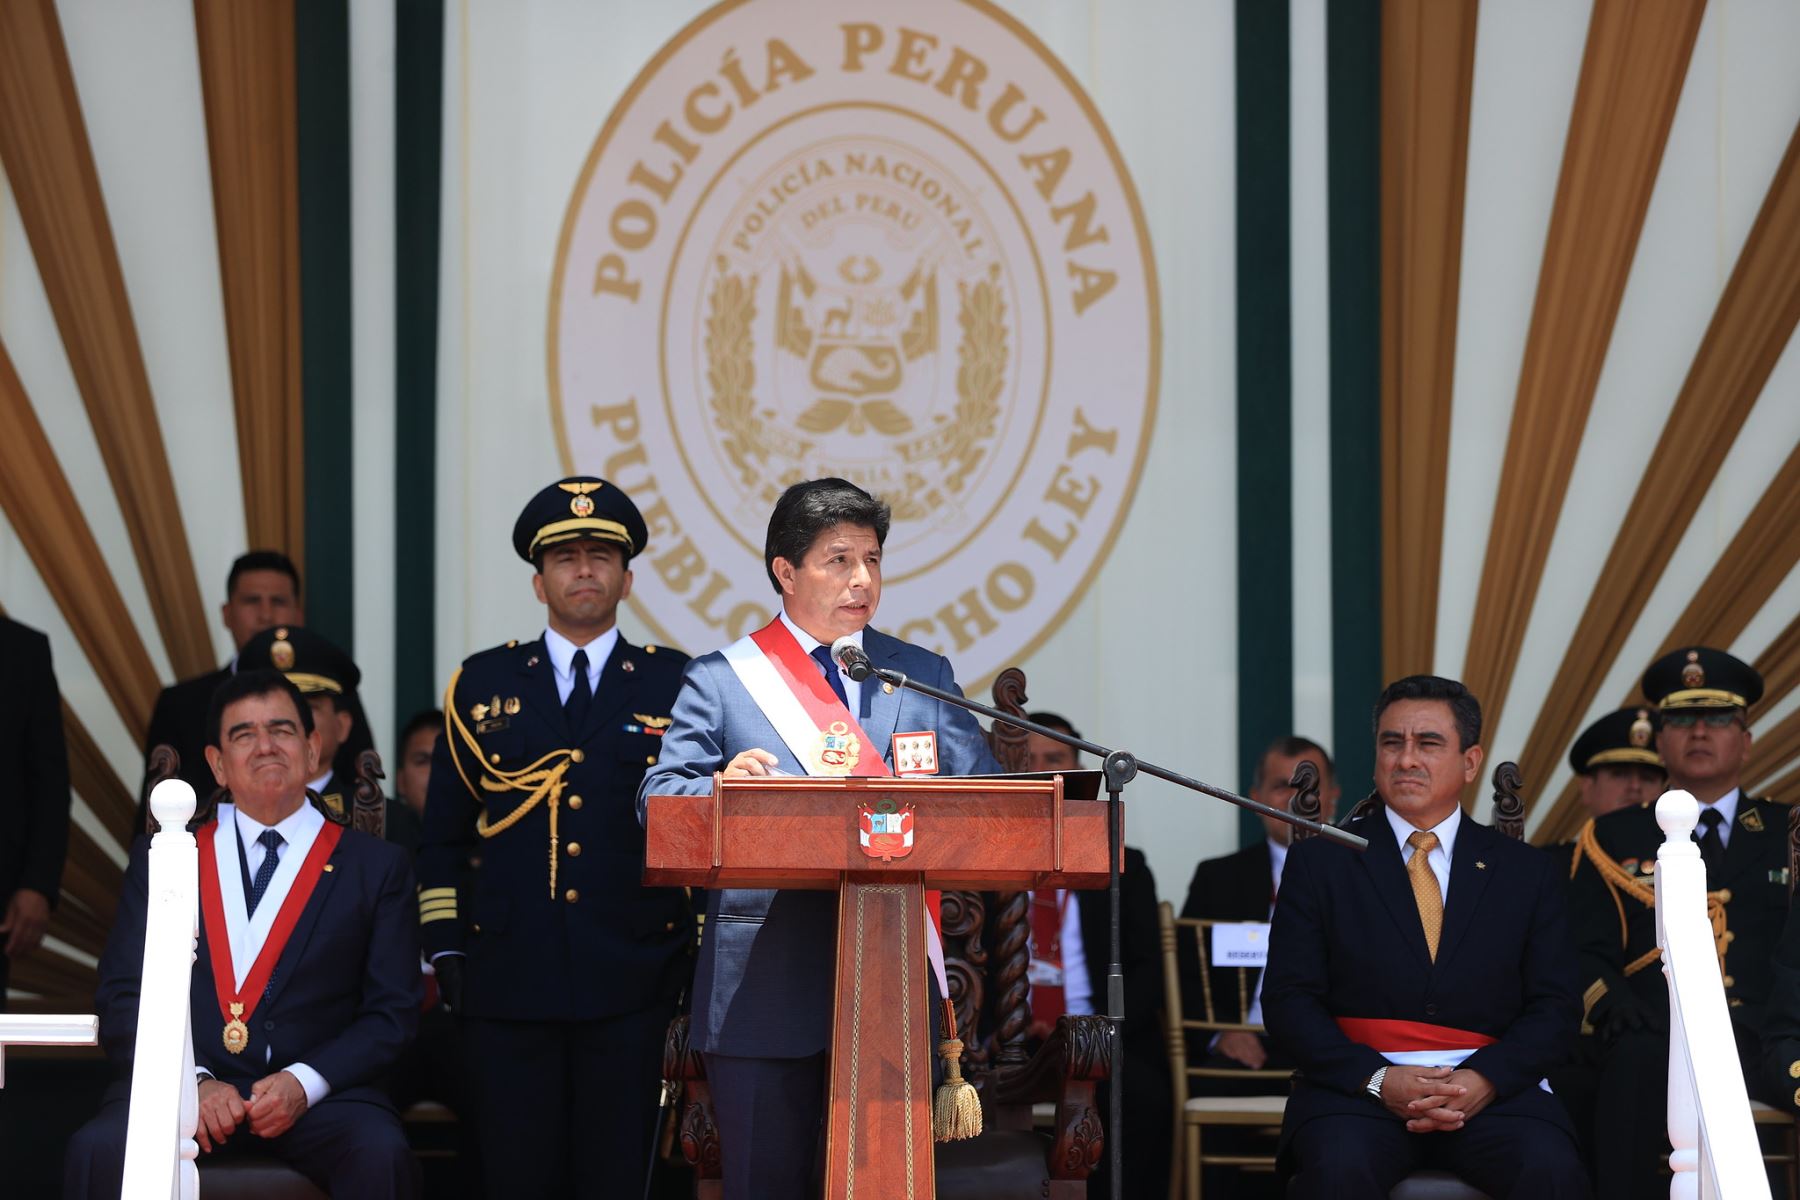 El presidente Pedro Castillo Terrones y el ministro Willy Huerta, lideraron la ceremonia por el 34° aniversario de creación de la Policía Nacional, que se desarrolla en la Escuela de Oficiales de la PNP en Chorrillos.
Foto: ANDINA/Presidencia Perú